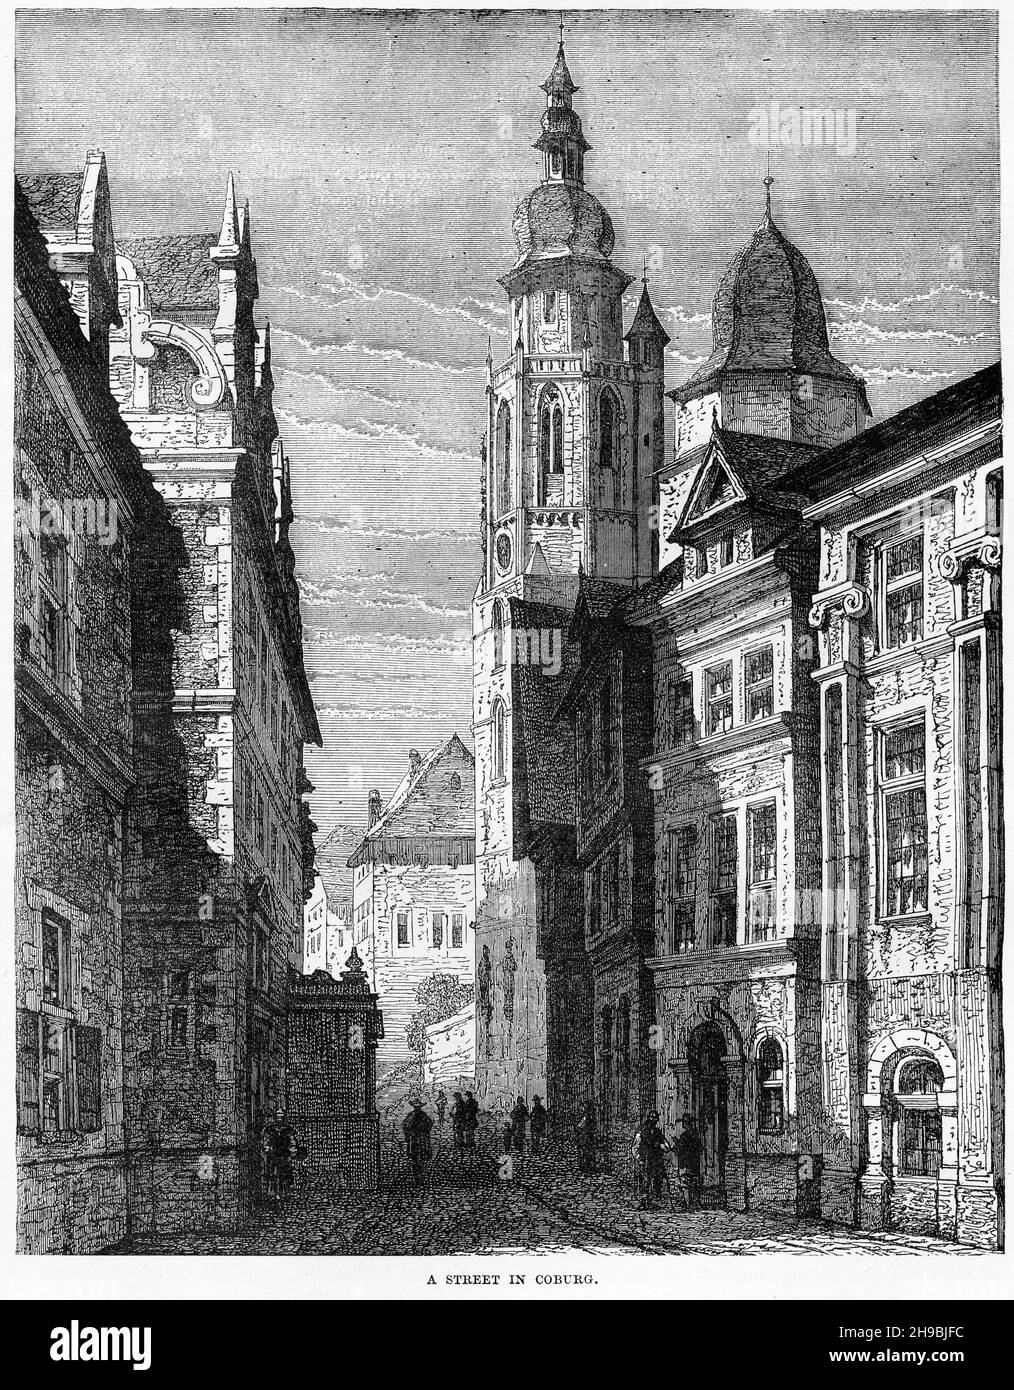 Gravure d'une rue à Coburg, Allemagne, à la fin des années 1600 Banque D'Images